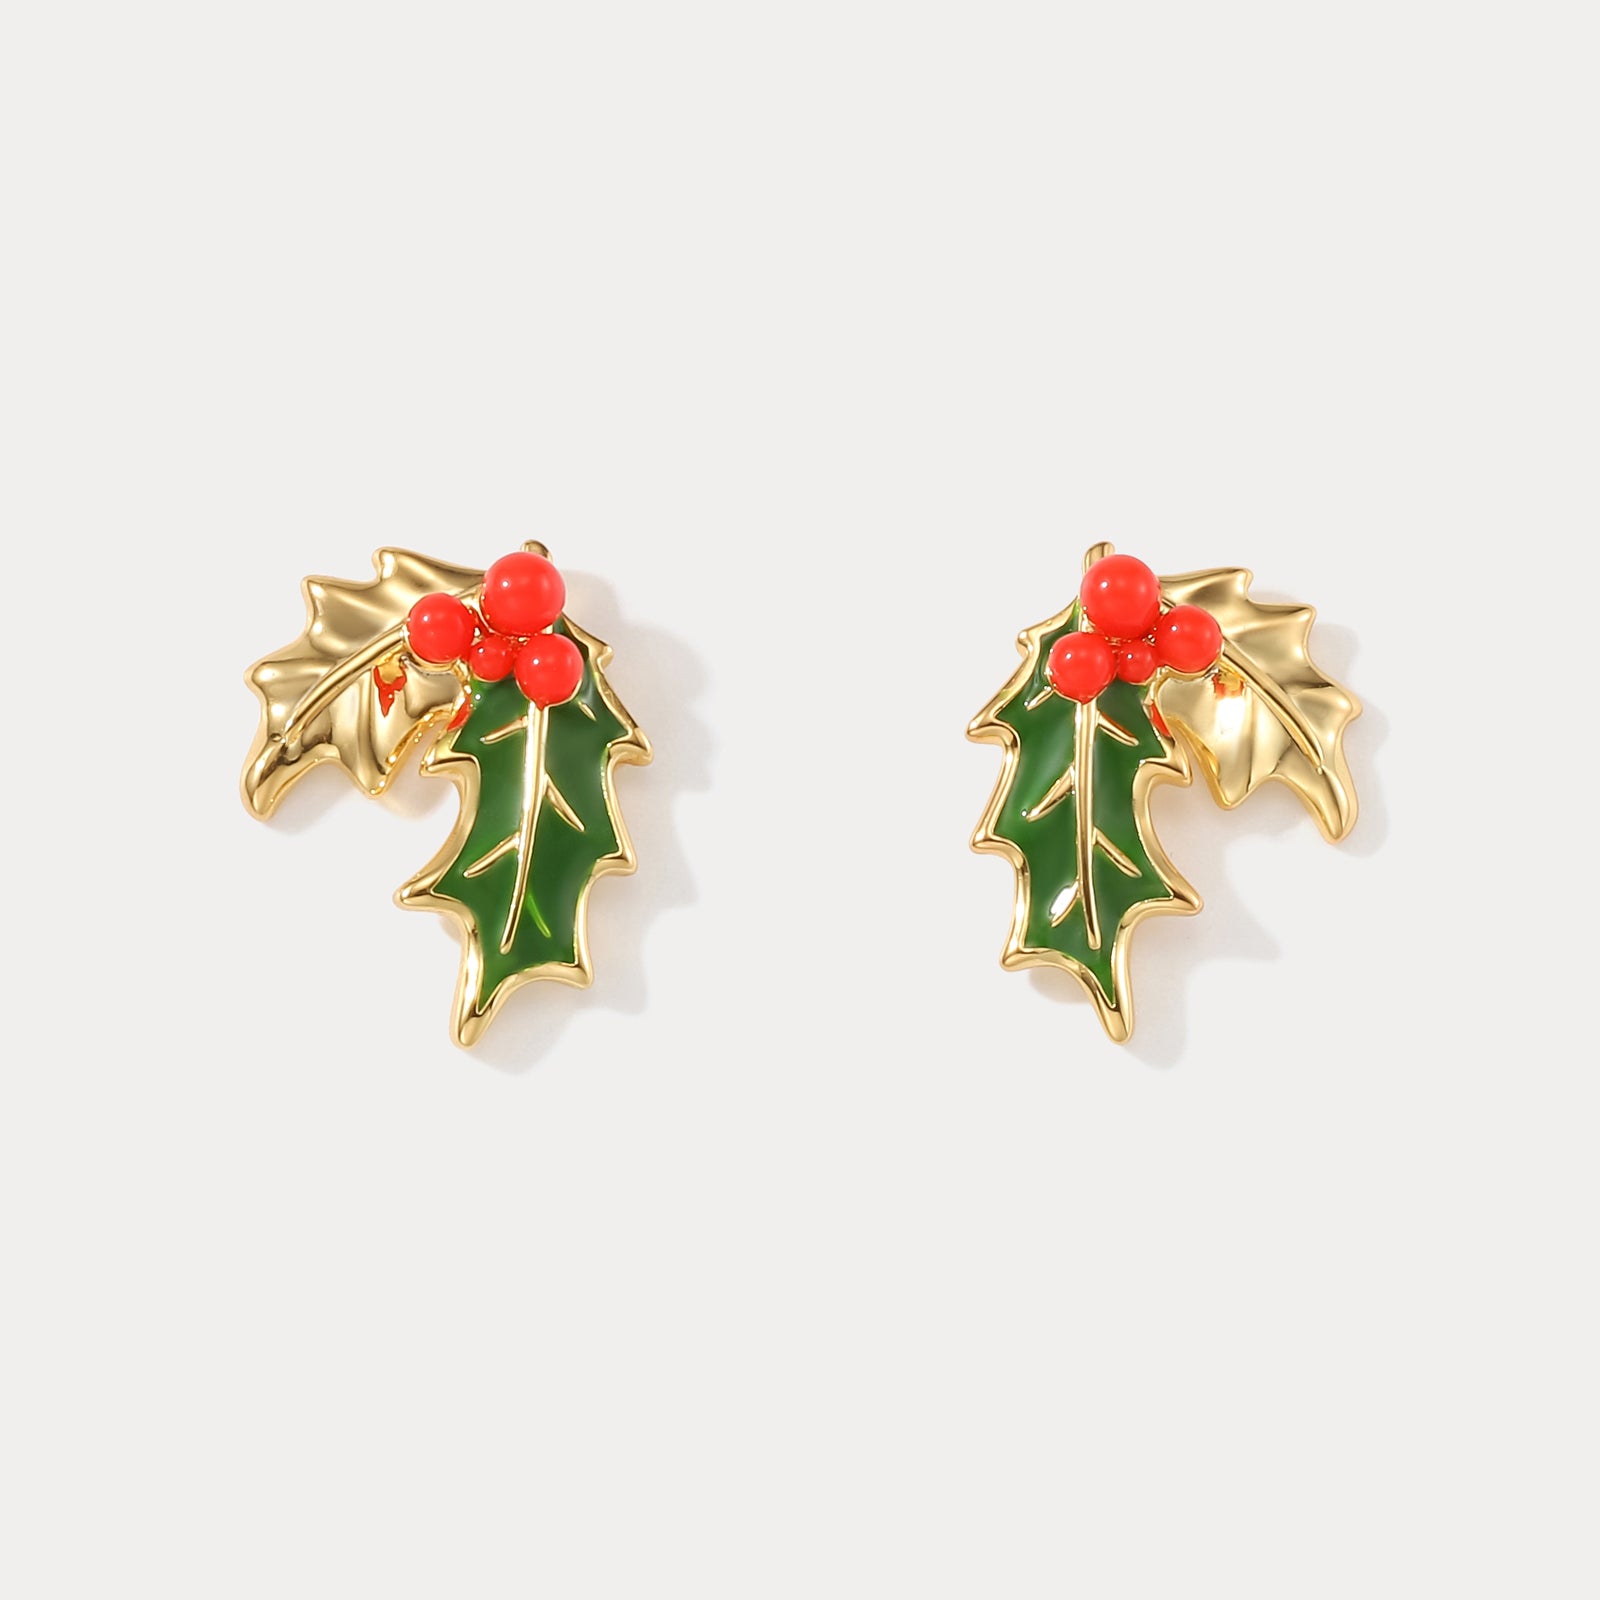 Selenichast Merry Christmas Holly Earrings